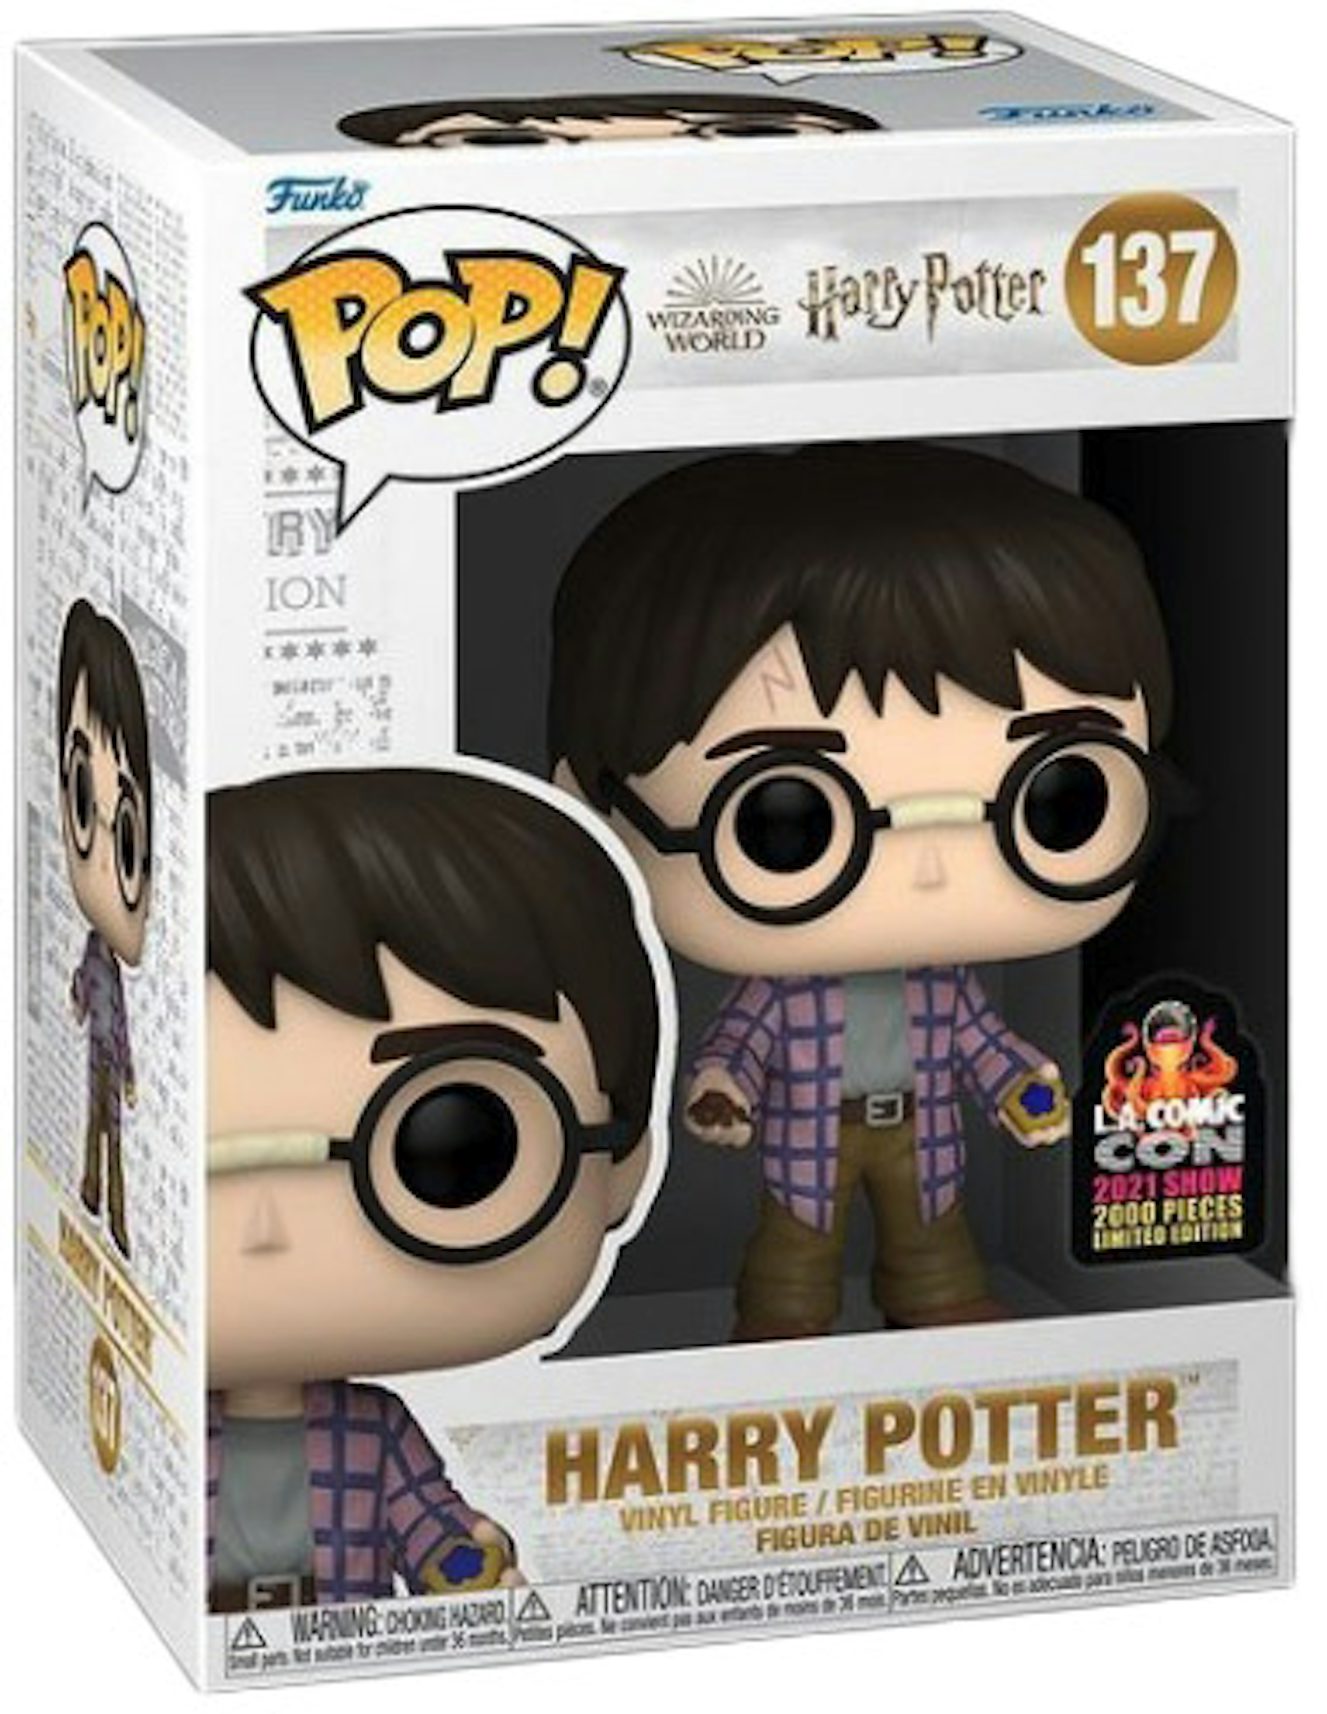 Funko Pop! Harry Potter LA Comic Con Exclusive Figure (Edition of